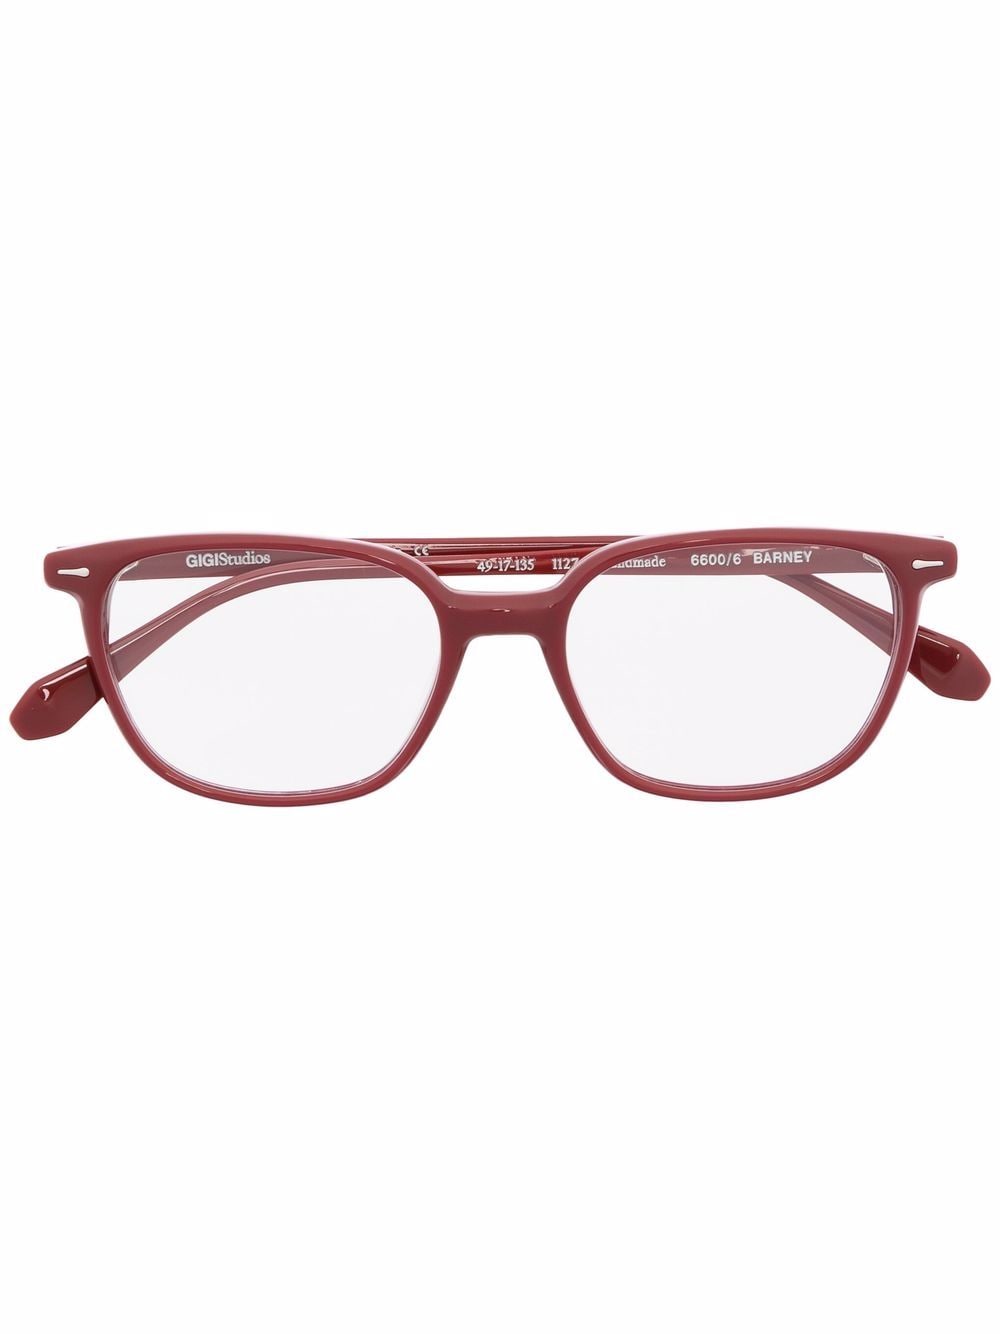 GIGI STUDIOS square-frame glasses - Red von GIGI STUDIOS